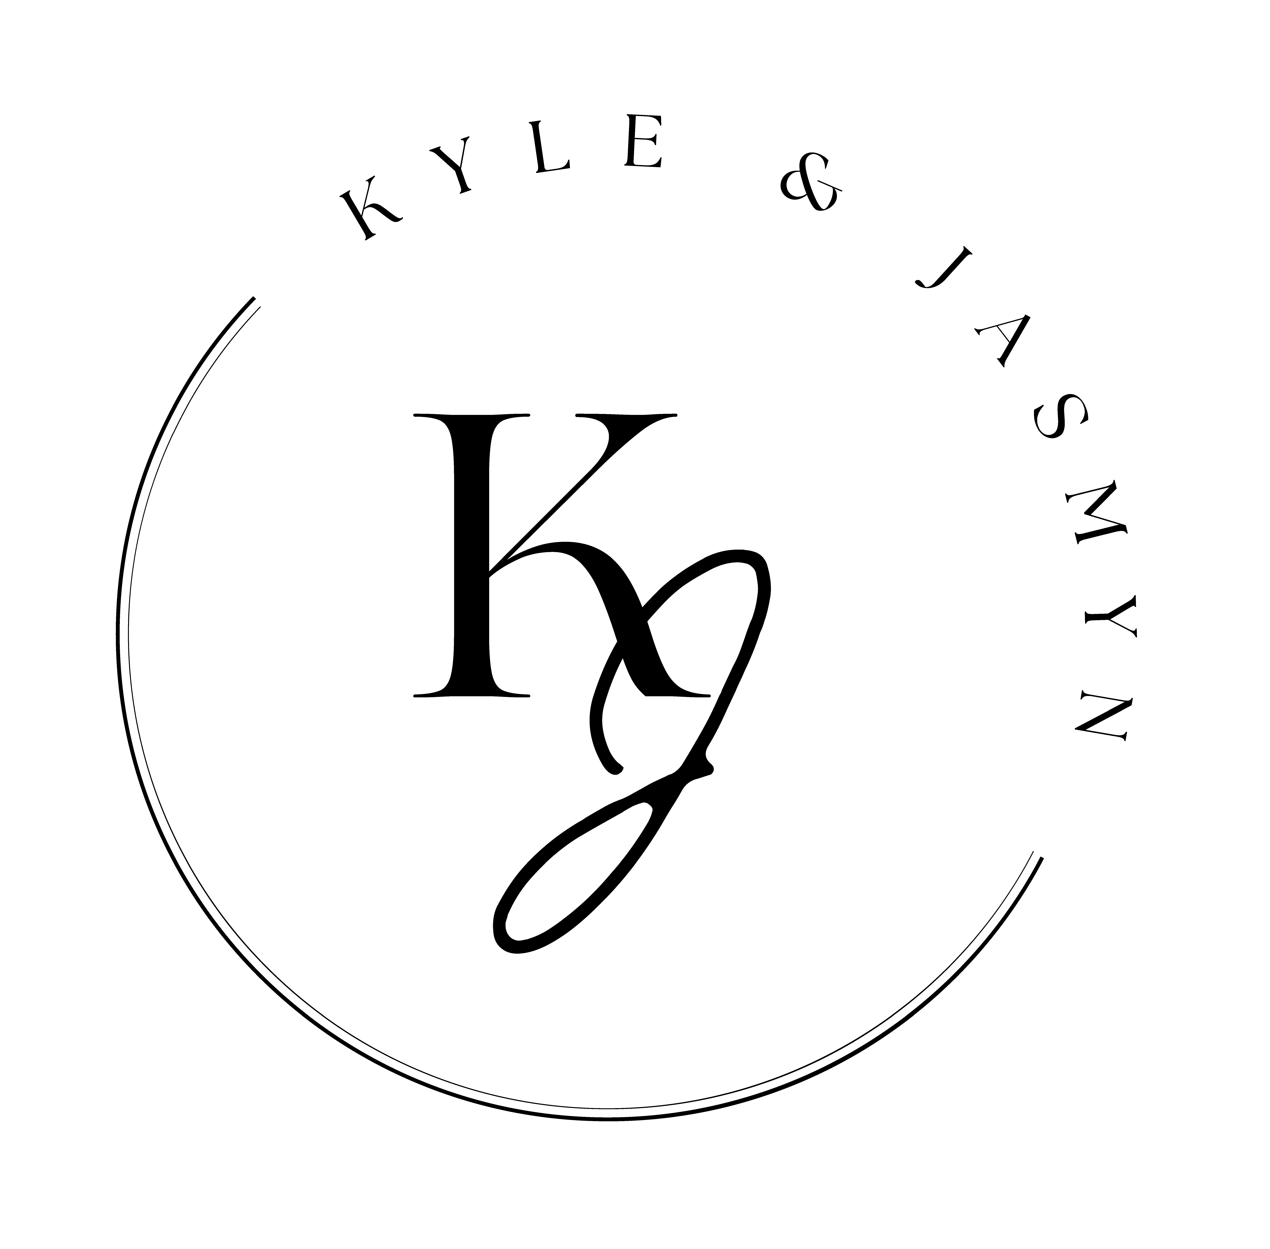 The Wedding Website of Jasmyn Kierczynski and Kyle Geraghty